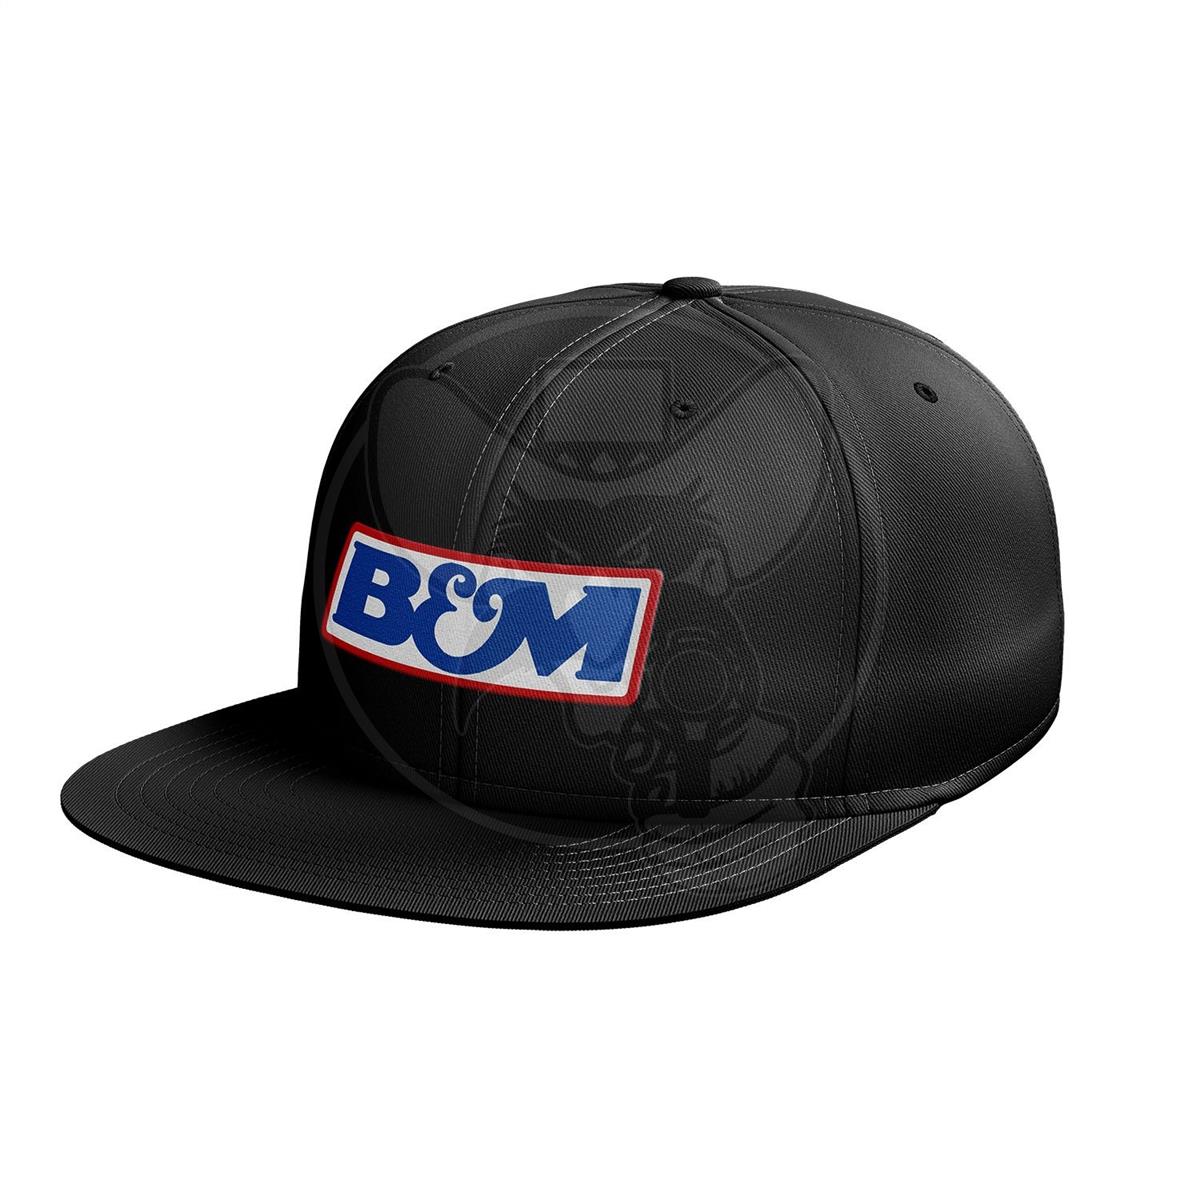 B&M SNAPBACK PEAKED HAT